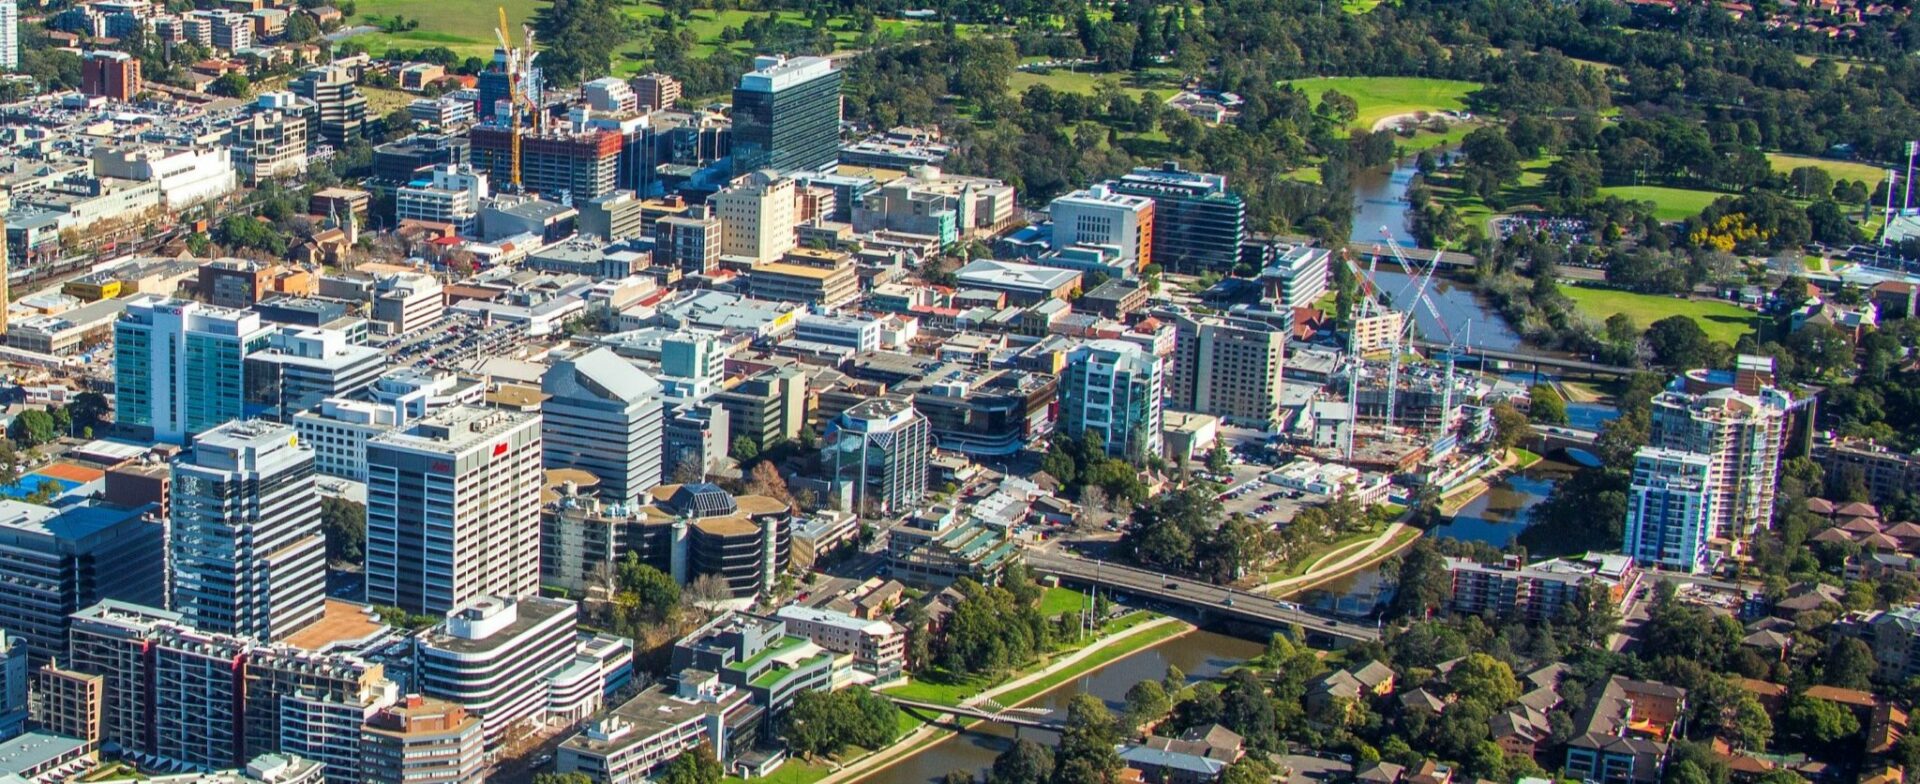 An aerial view of Parramatta, NSW - insulation installers in Parramatta